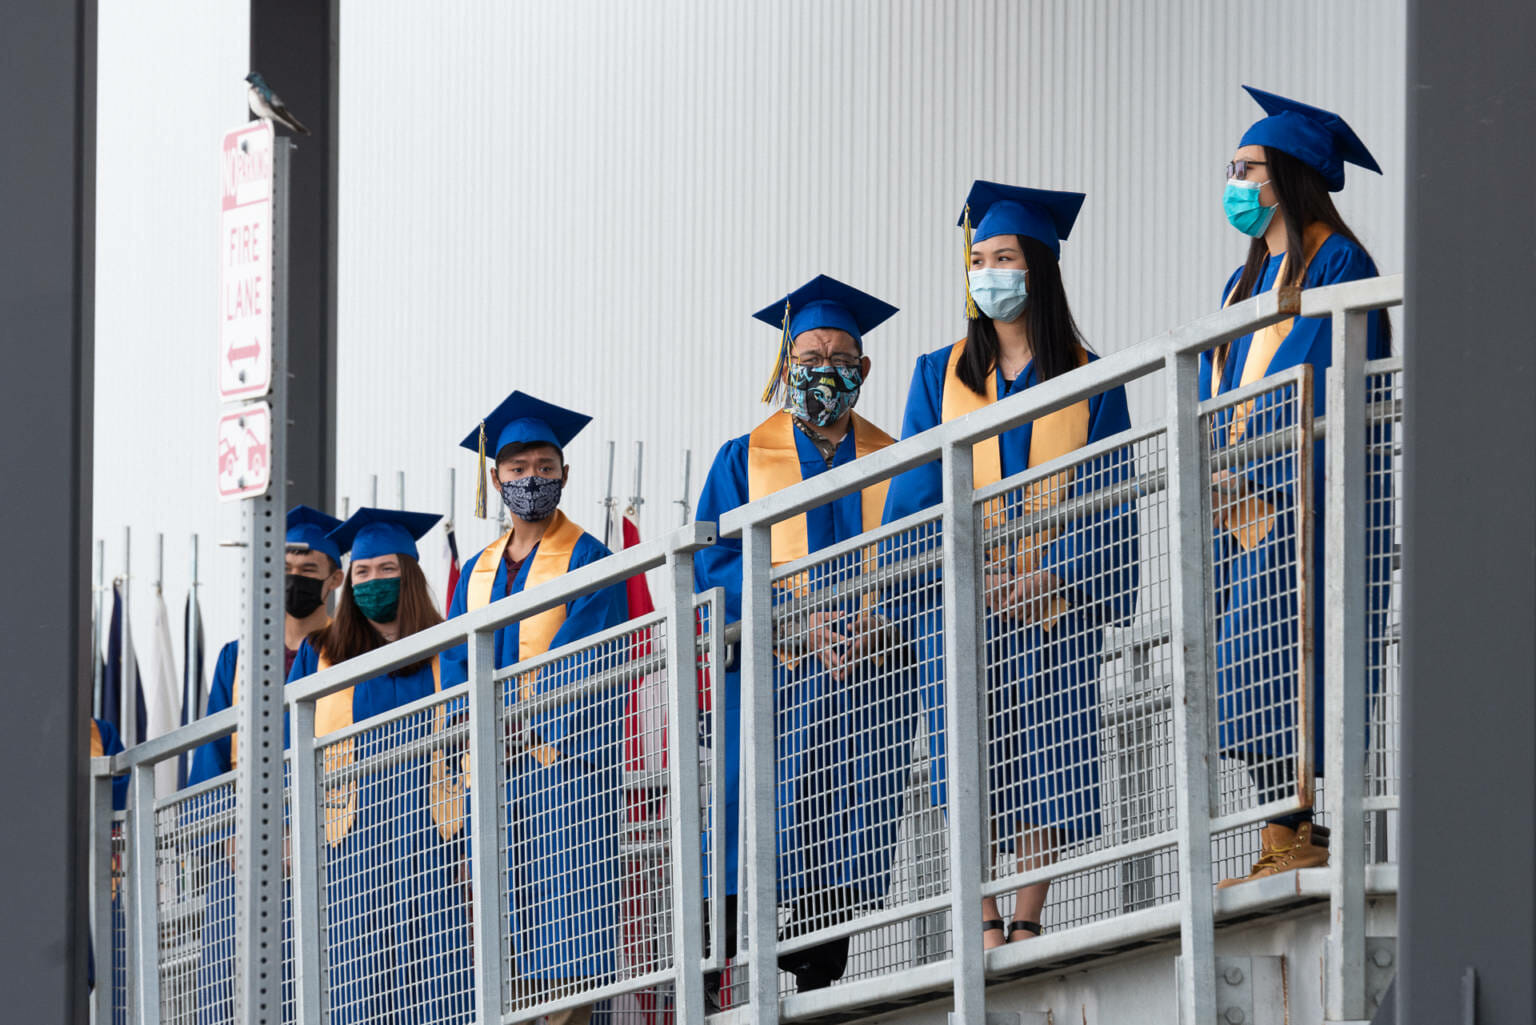 Alaska Senate bill seeks to address low graduation rates by allowing